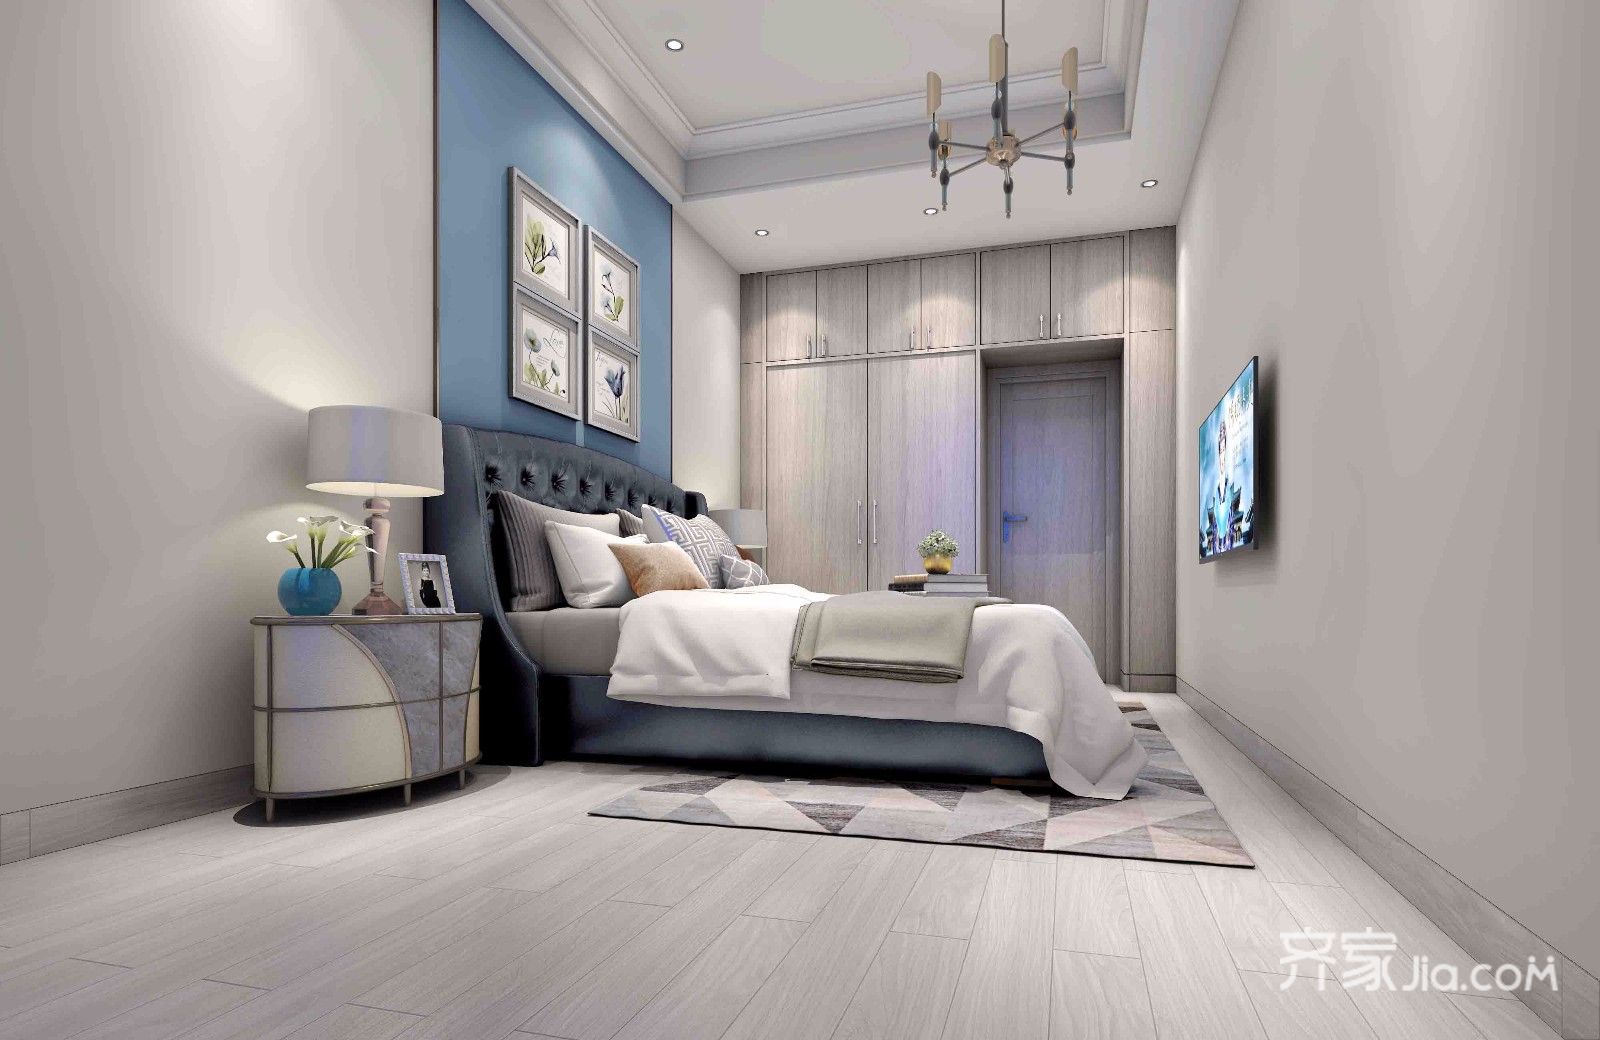 5-10万装修,二居室装修,70平米装修,卧室,现代简约风格,卧室背景墙,蓝色